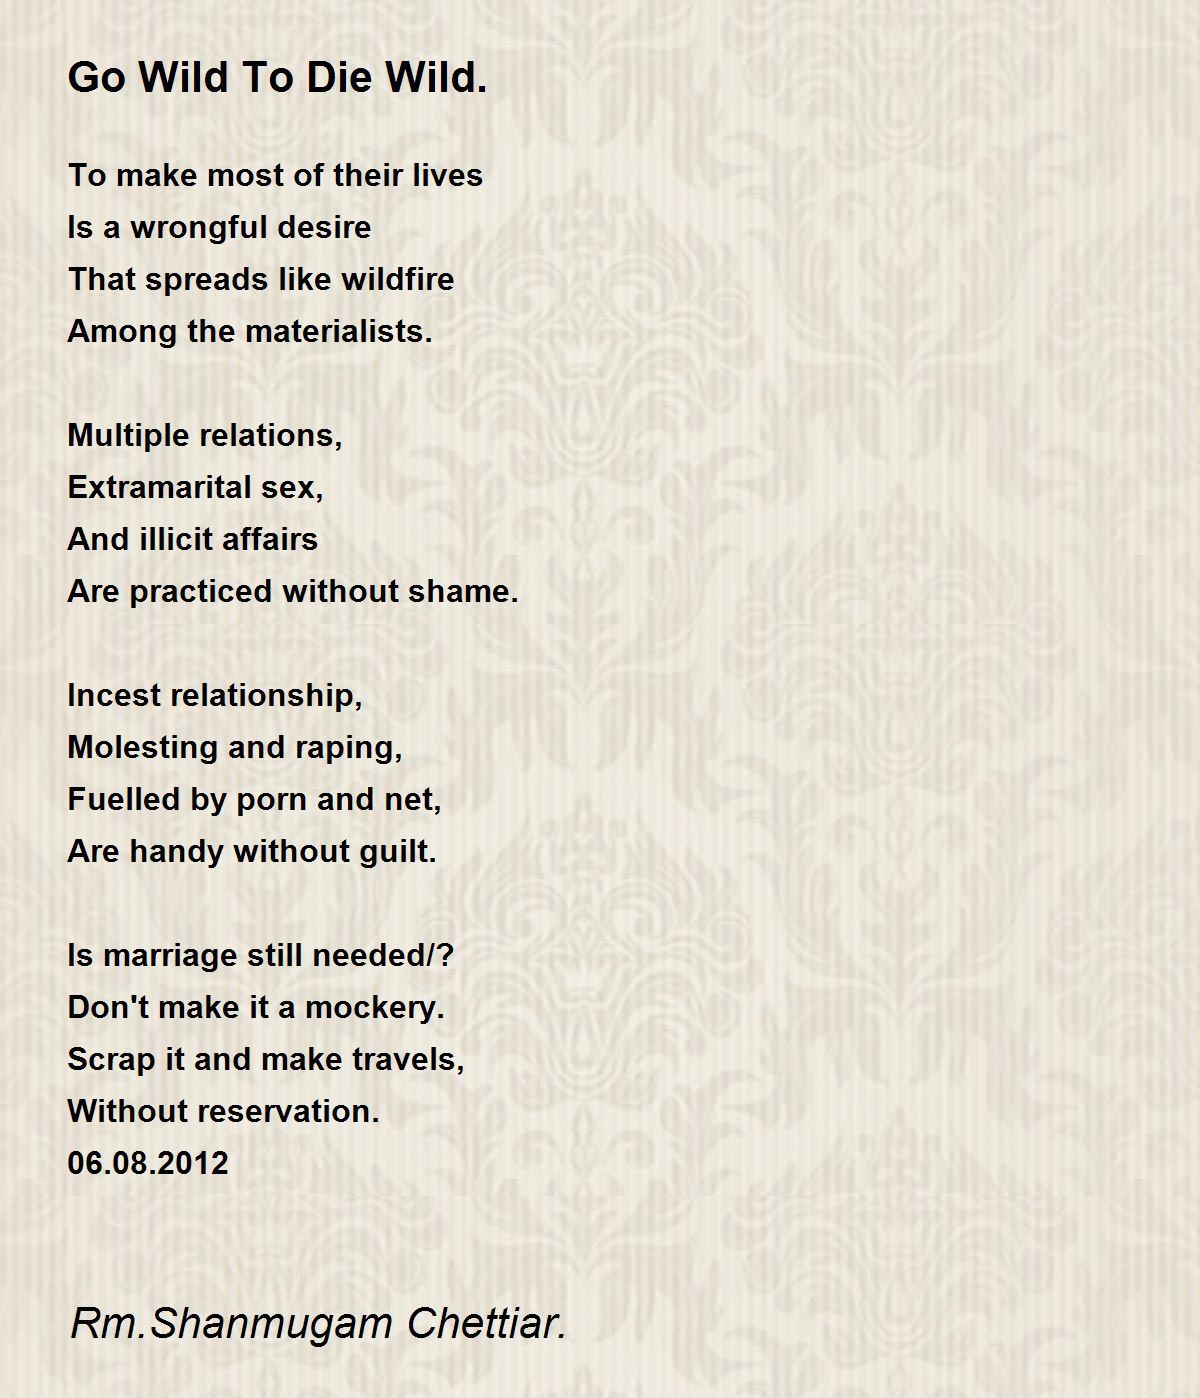 1200px x 1398px - Go Wild To Die Wild. - Go Wild To Die Wild. Poem by Rm. Shanmugam Chettiar